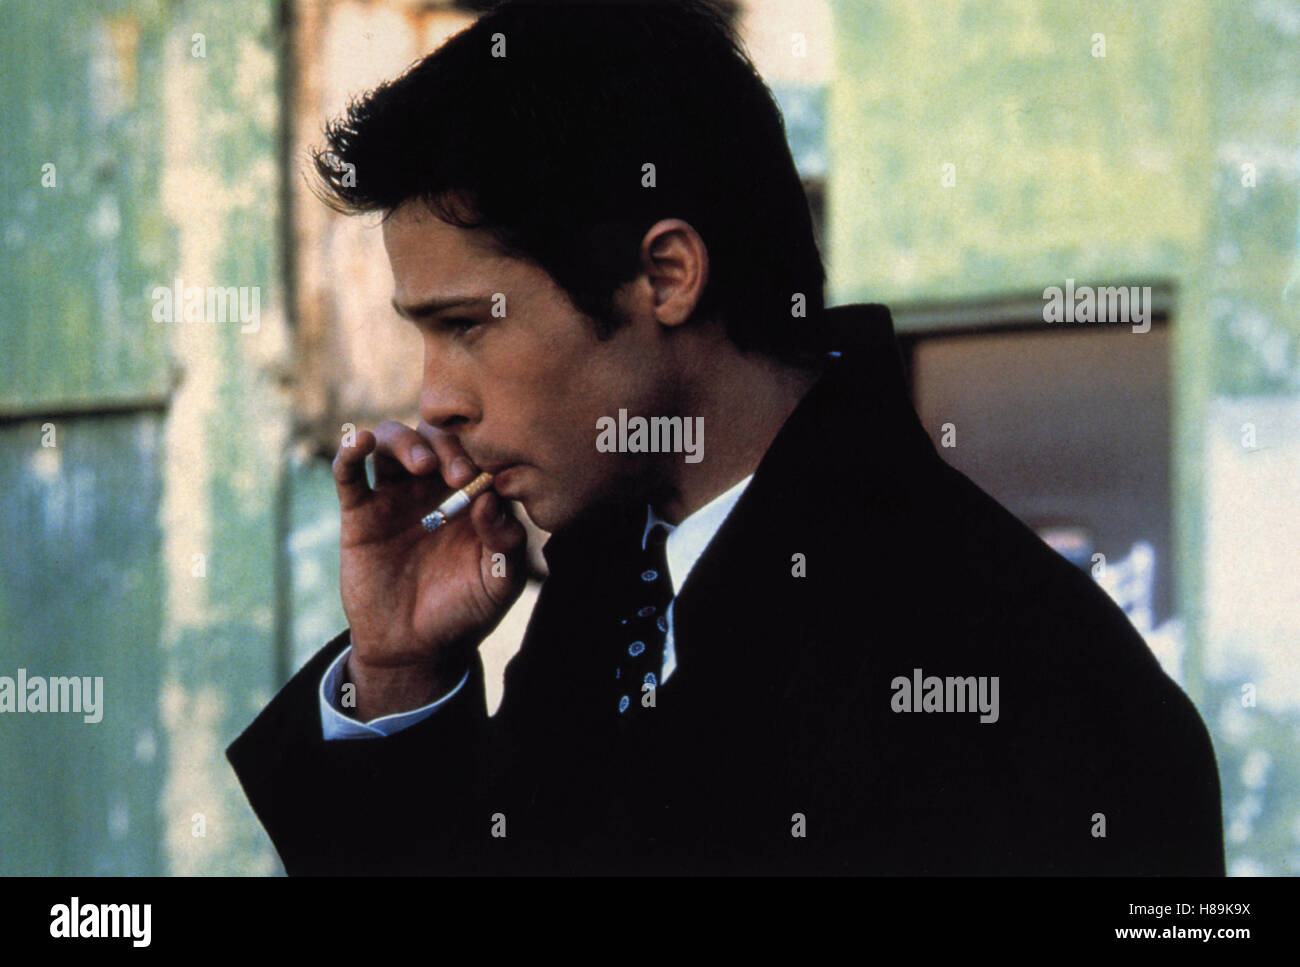 Sleepers, (SLEEPERS) USA 1997, Regie: Barry Levinson, BRAD PITT, Stichwort: Zigarette, Rauchen, Raucher Stock Photo